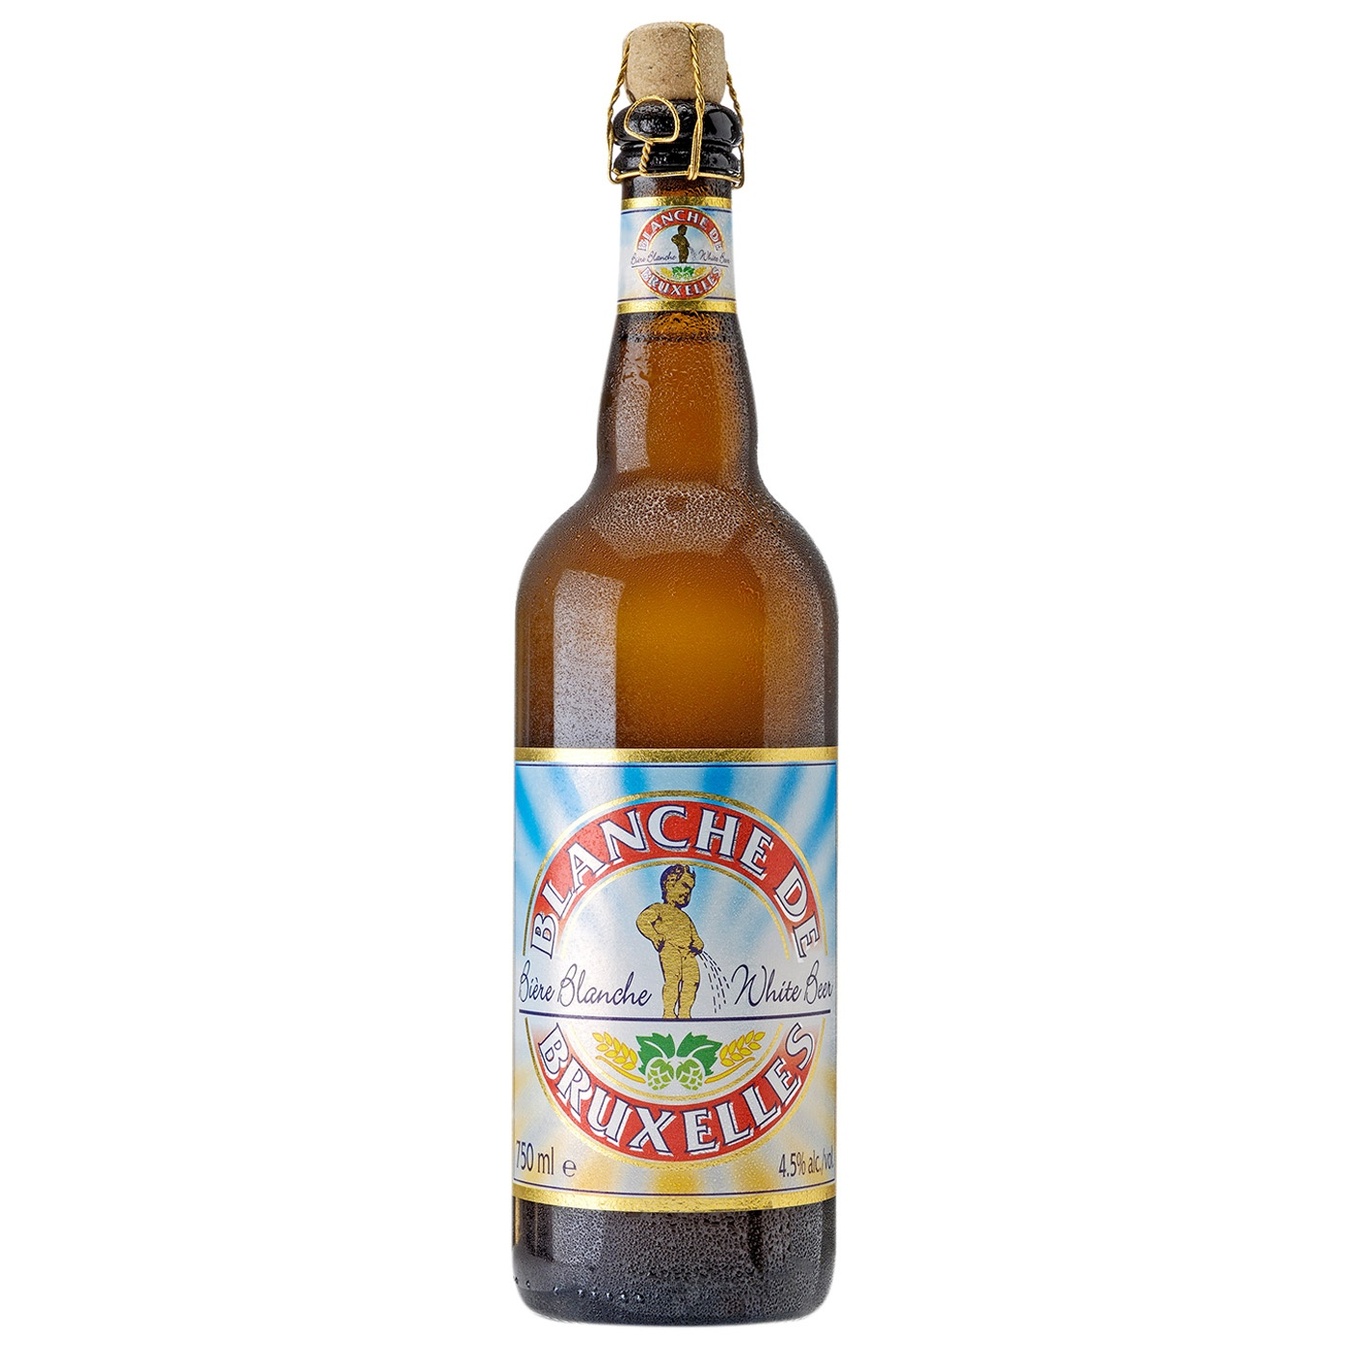 Light beer Blanshe de Bruxelles Witbier unfiltered 4.5% 0.75l glass